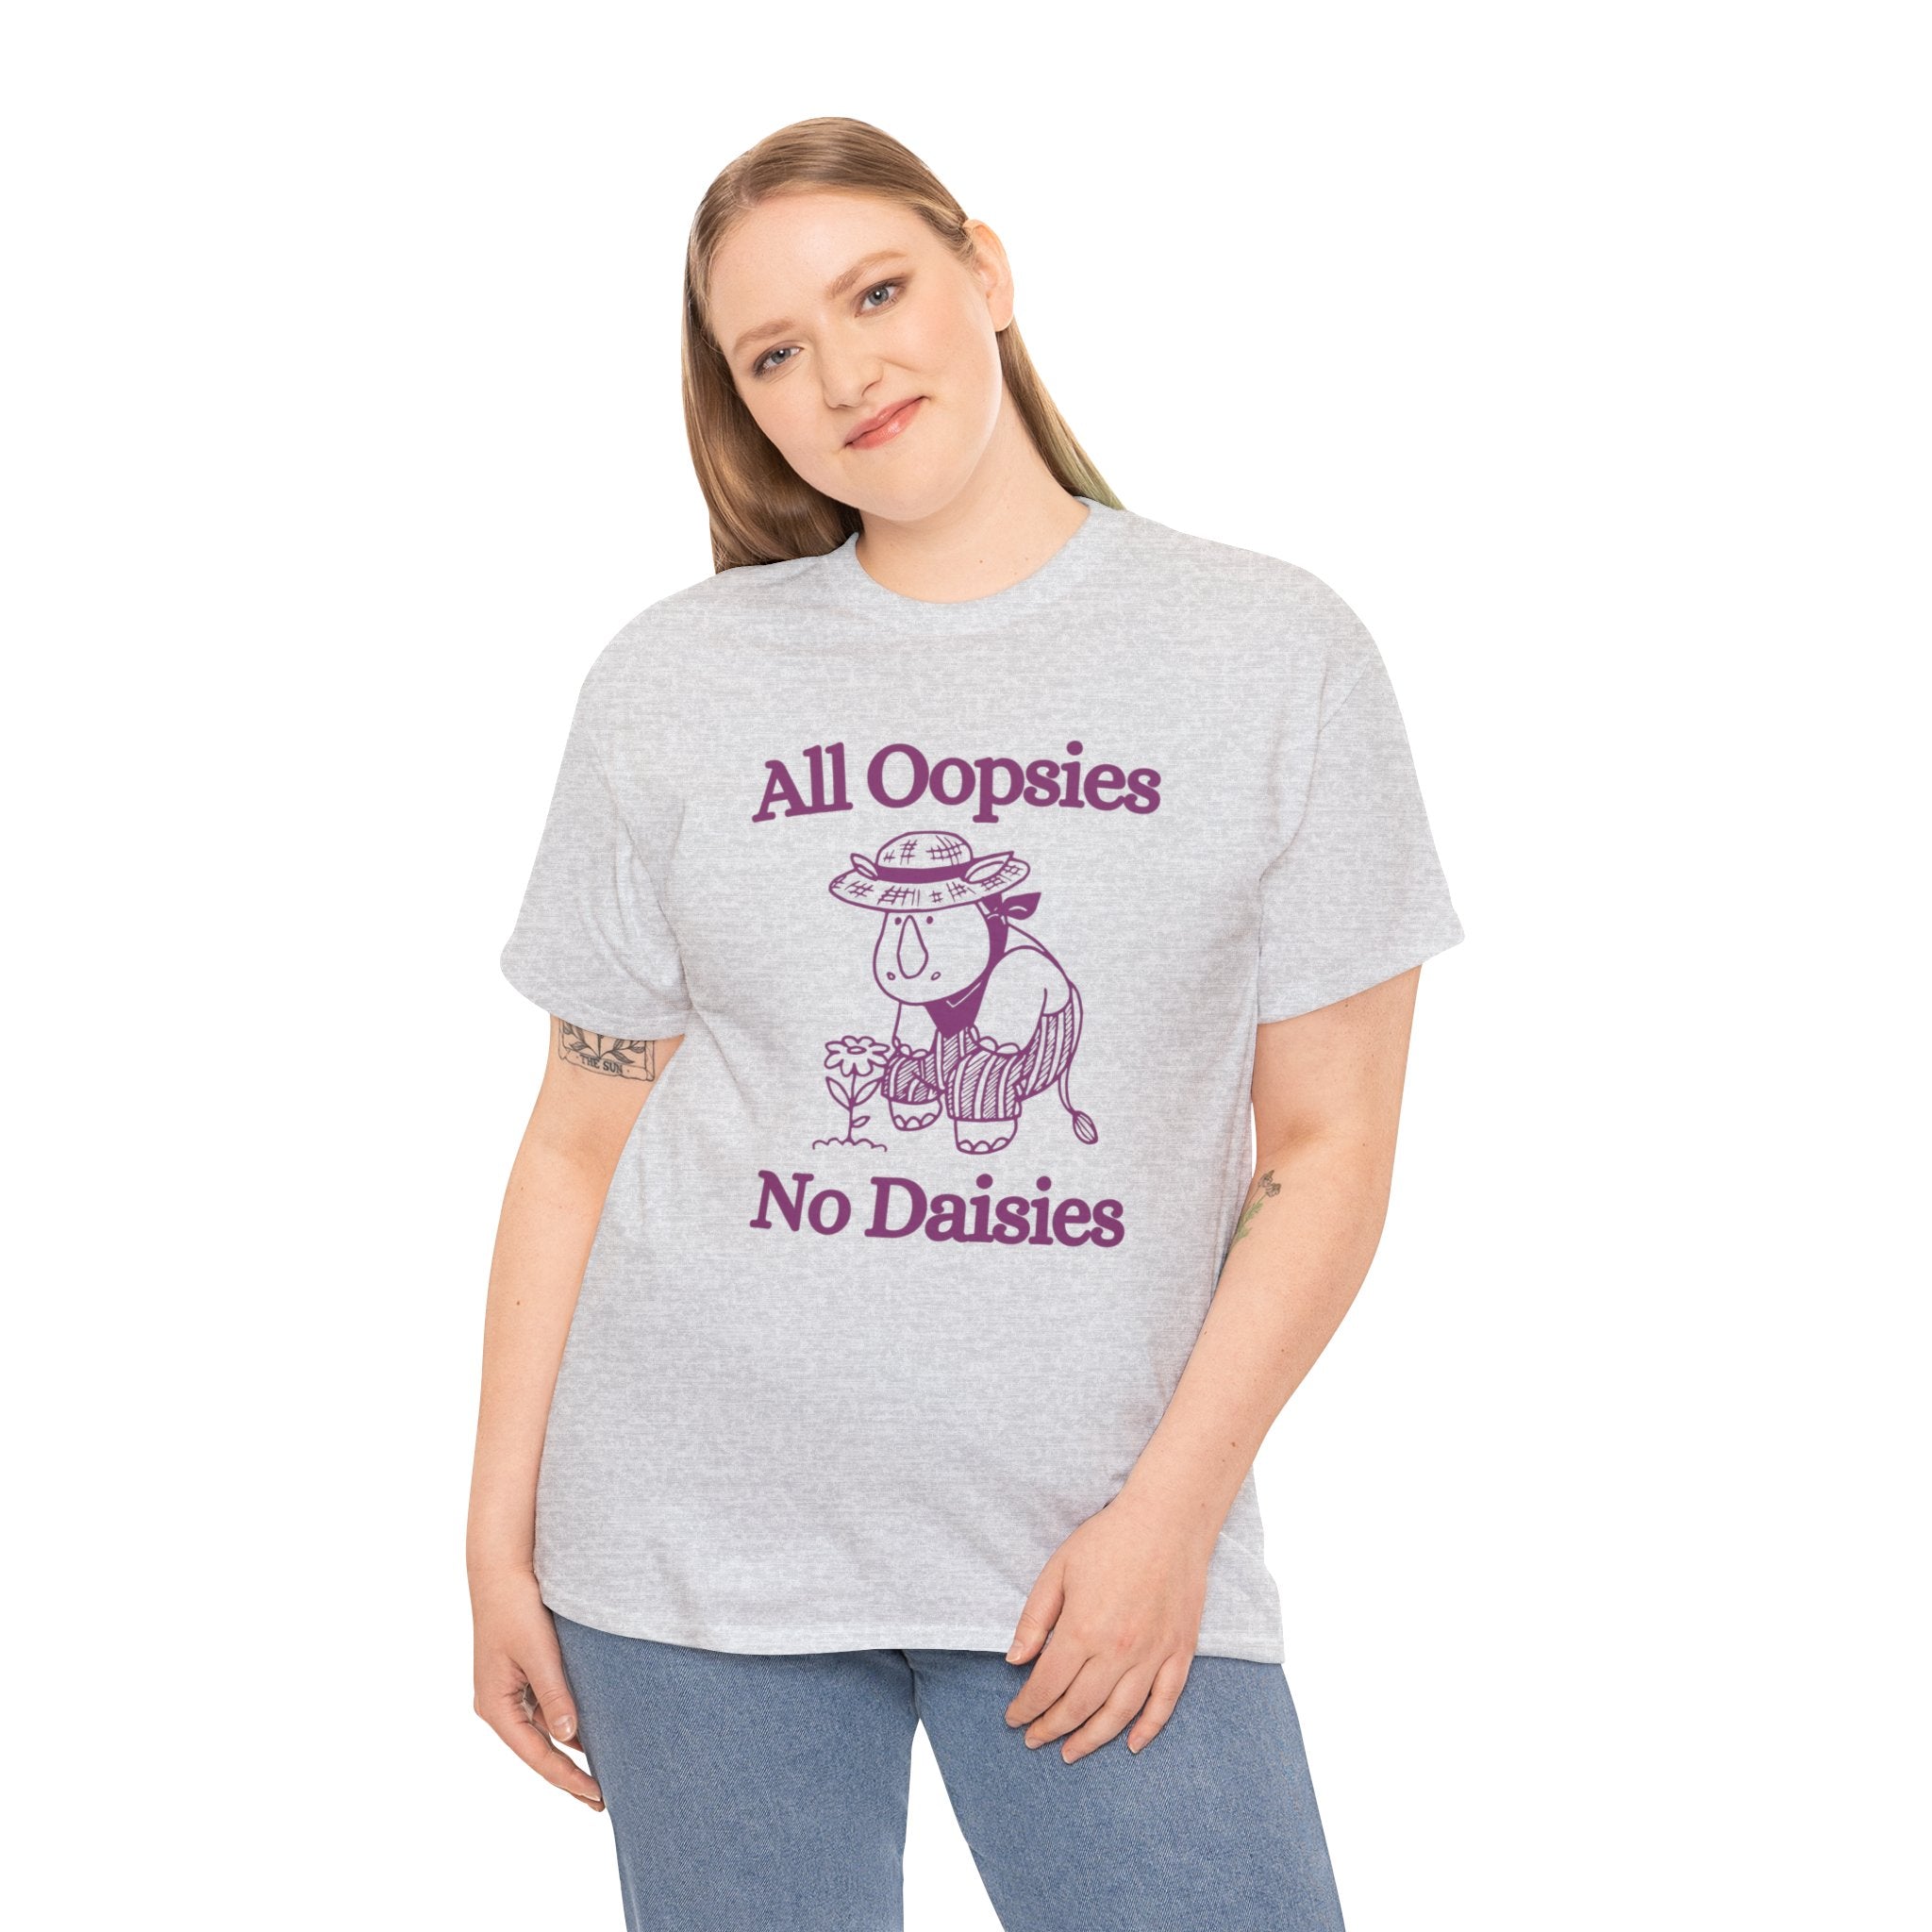 All oopsies no daisies shirt